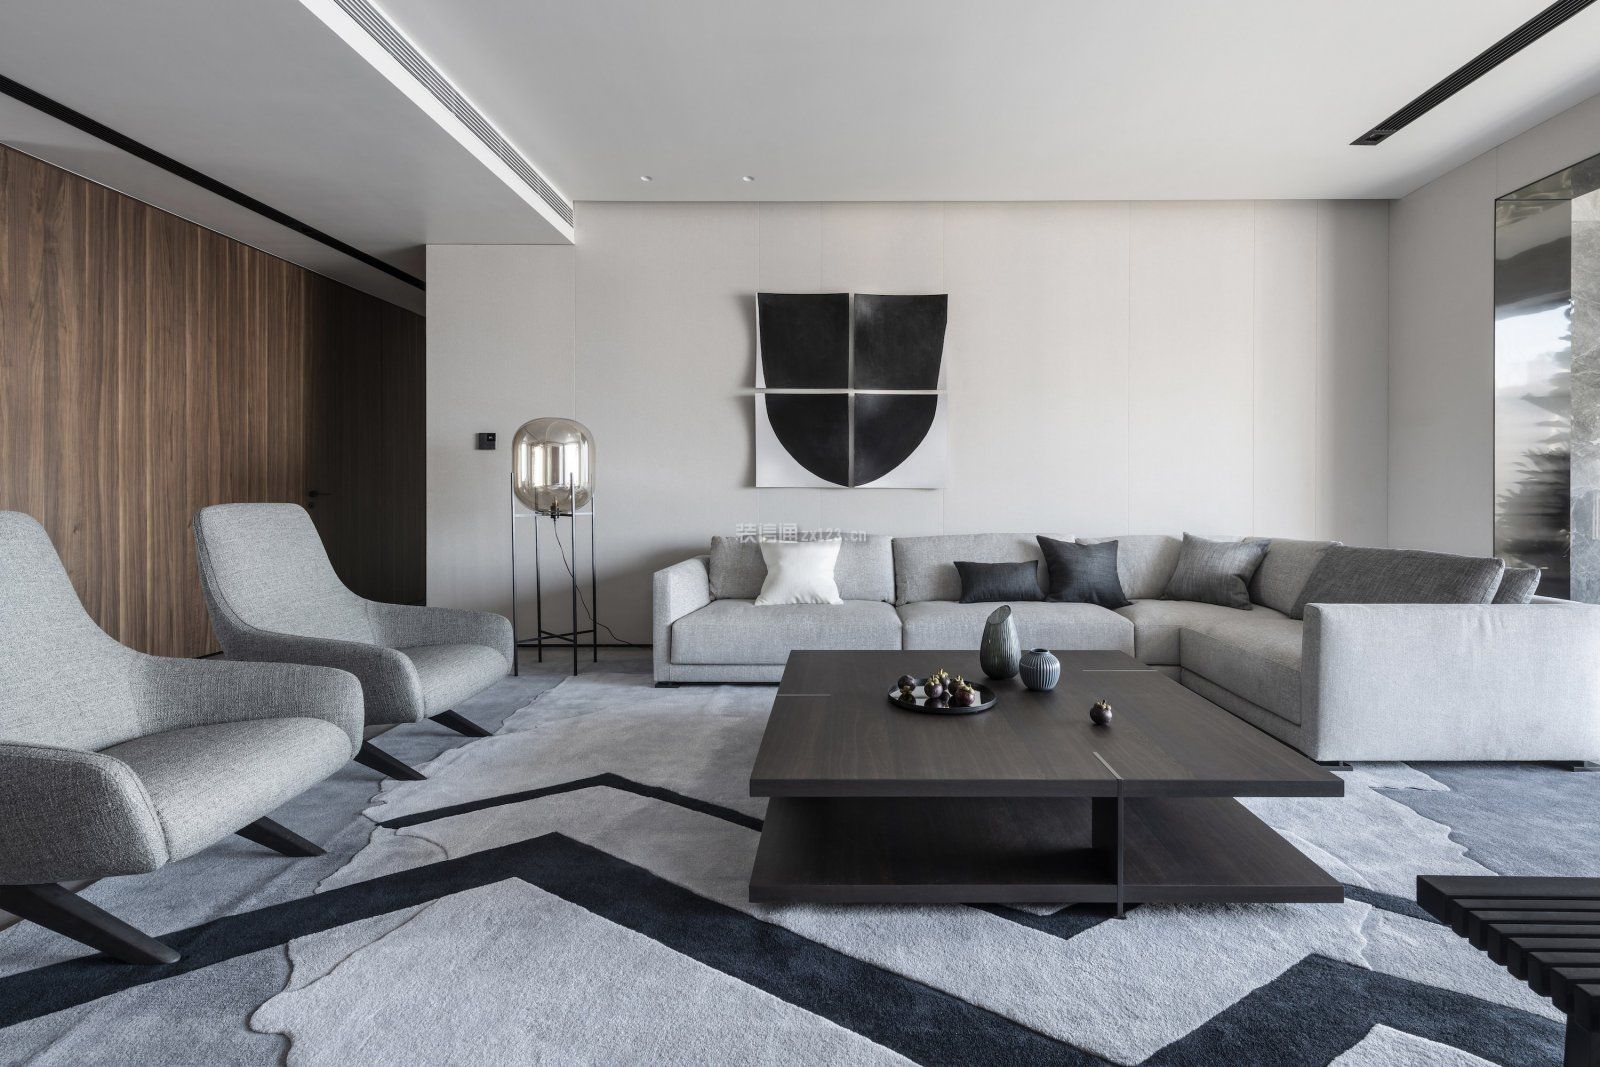  现代简约沙发背景墙装修效果图 现代简约沙发背景